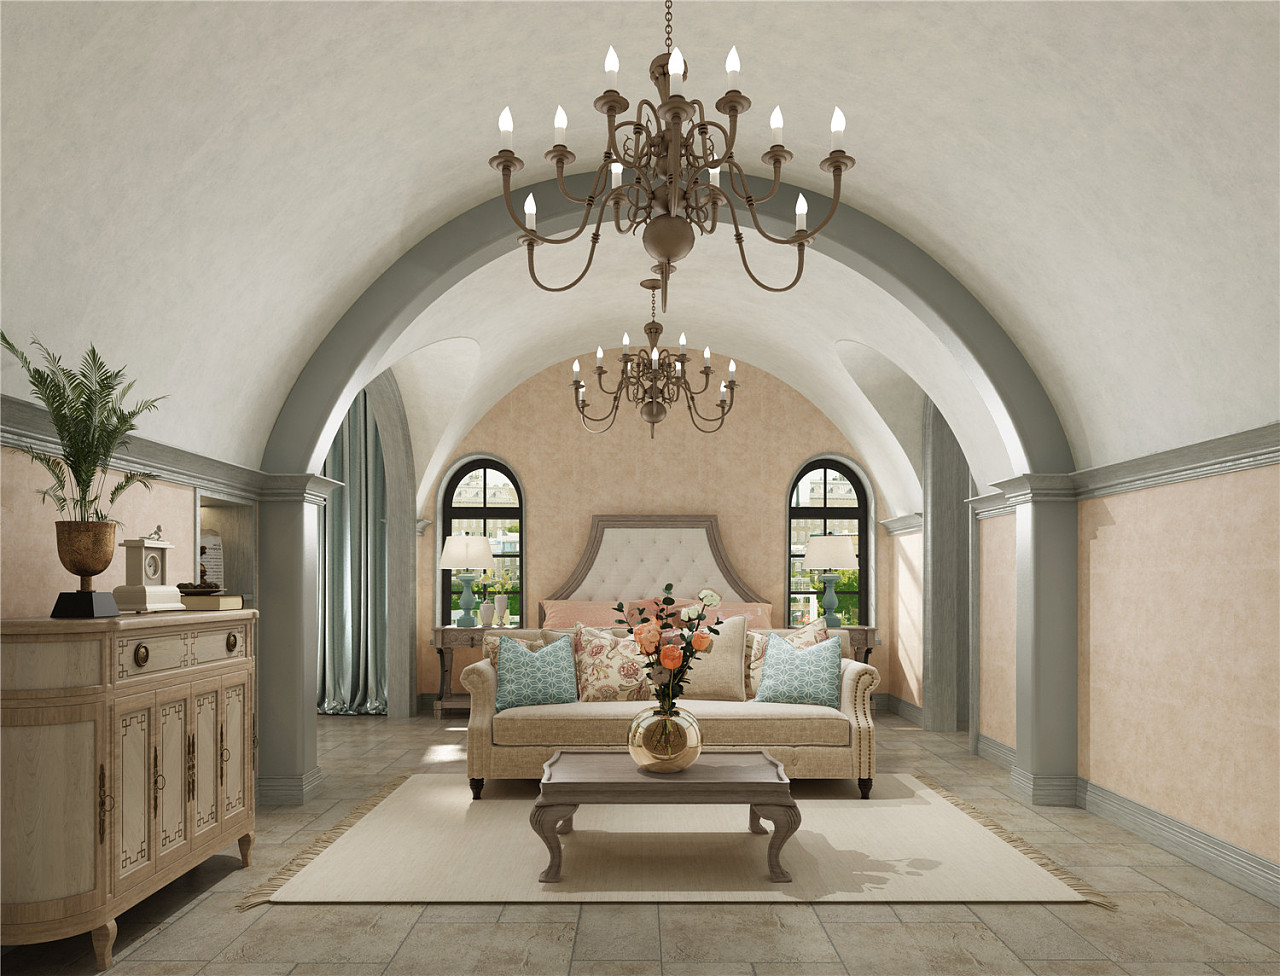 二居家装客厅罗马柱装修效果图欣赏 – 设计本装修效果图